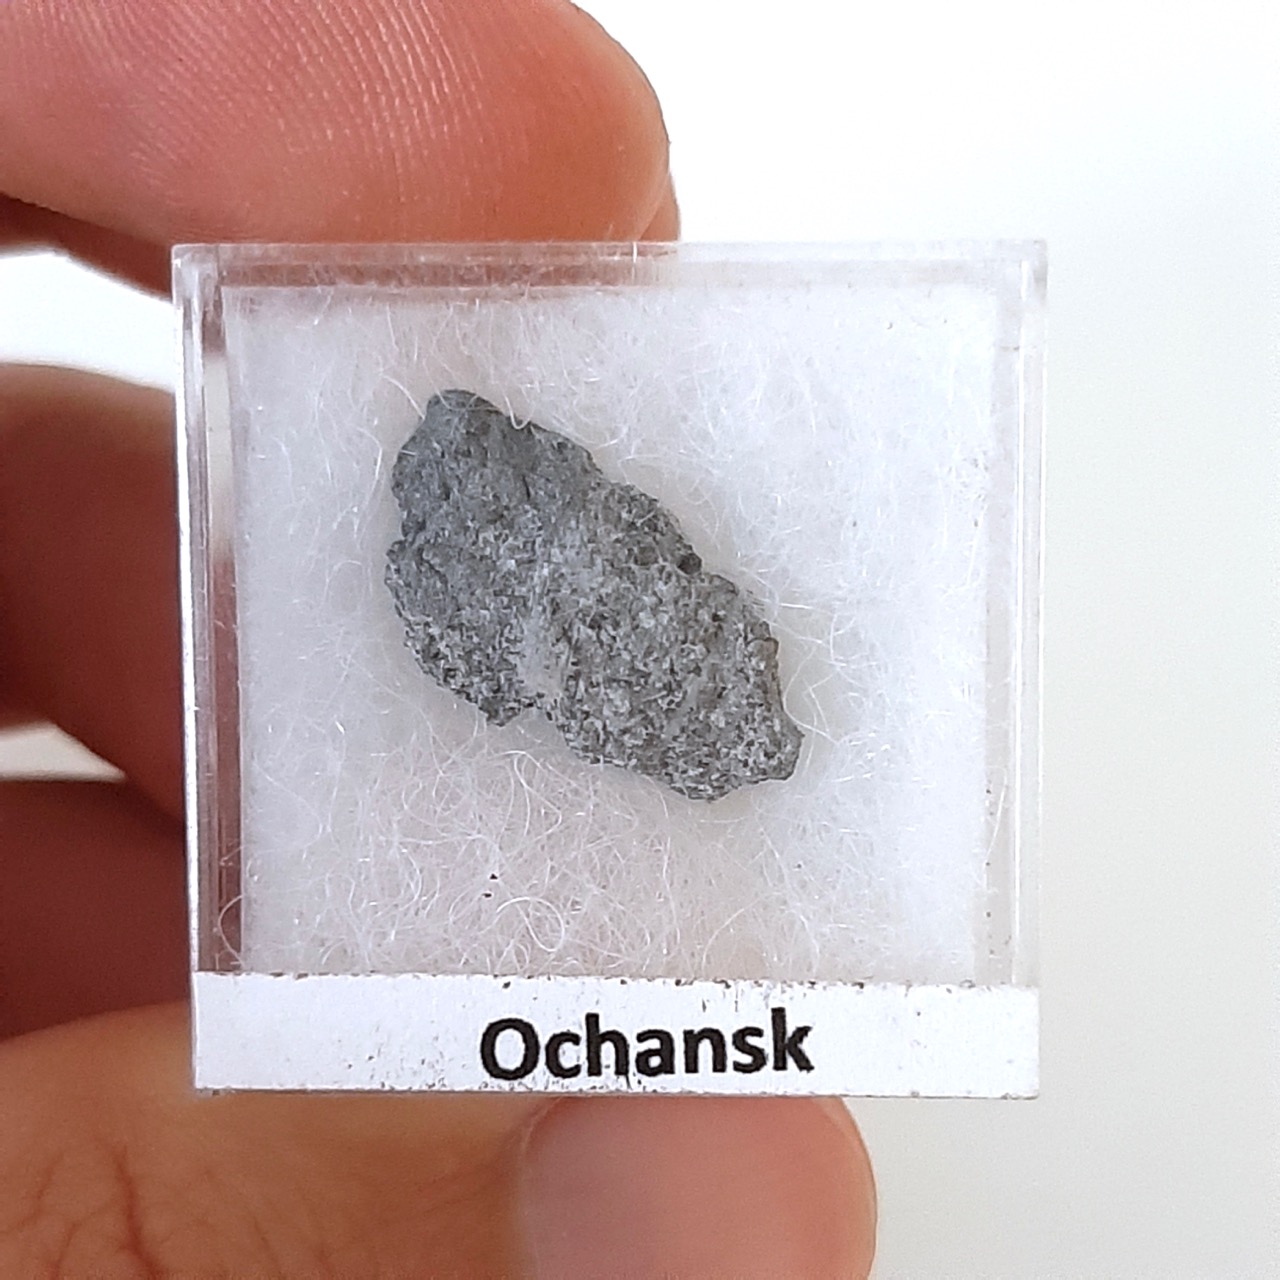 Ochansk meteorite. H5 chondrite. Historic fall.